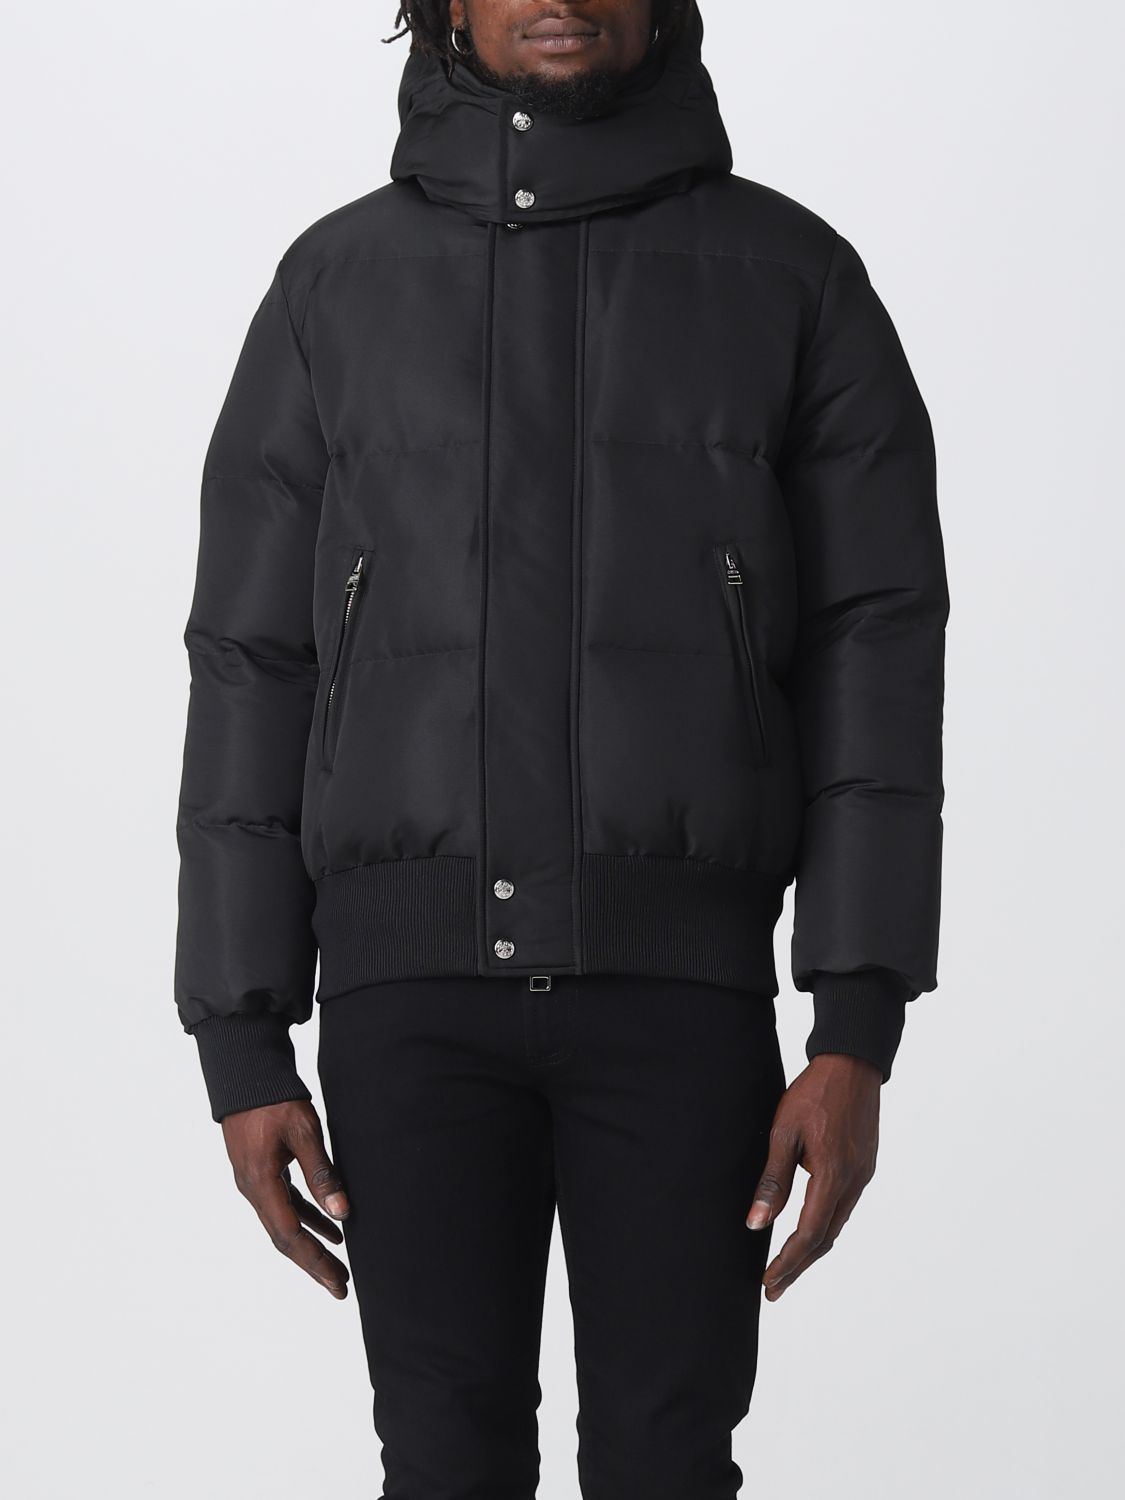 ALEXANDER MCQUEEN: jacket for man - Black | Alexander Mcqueen jacket ...